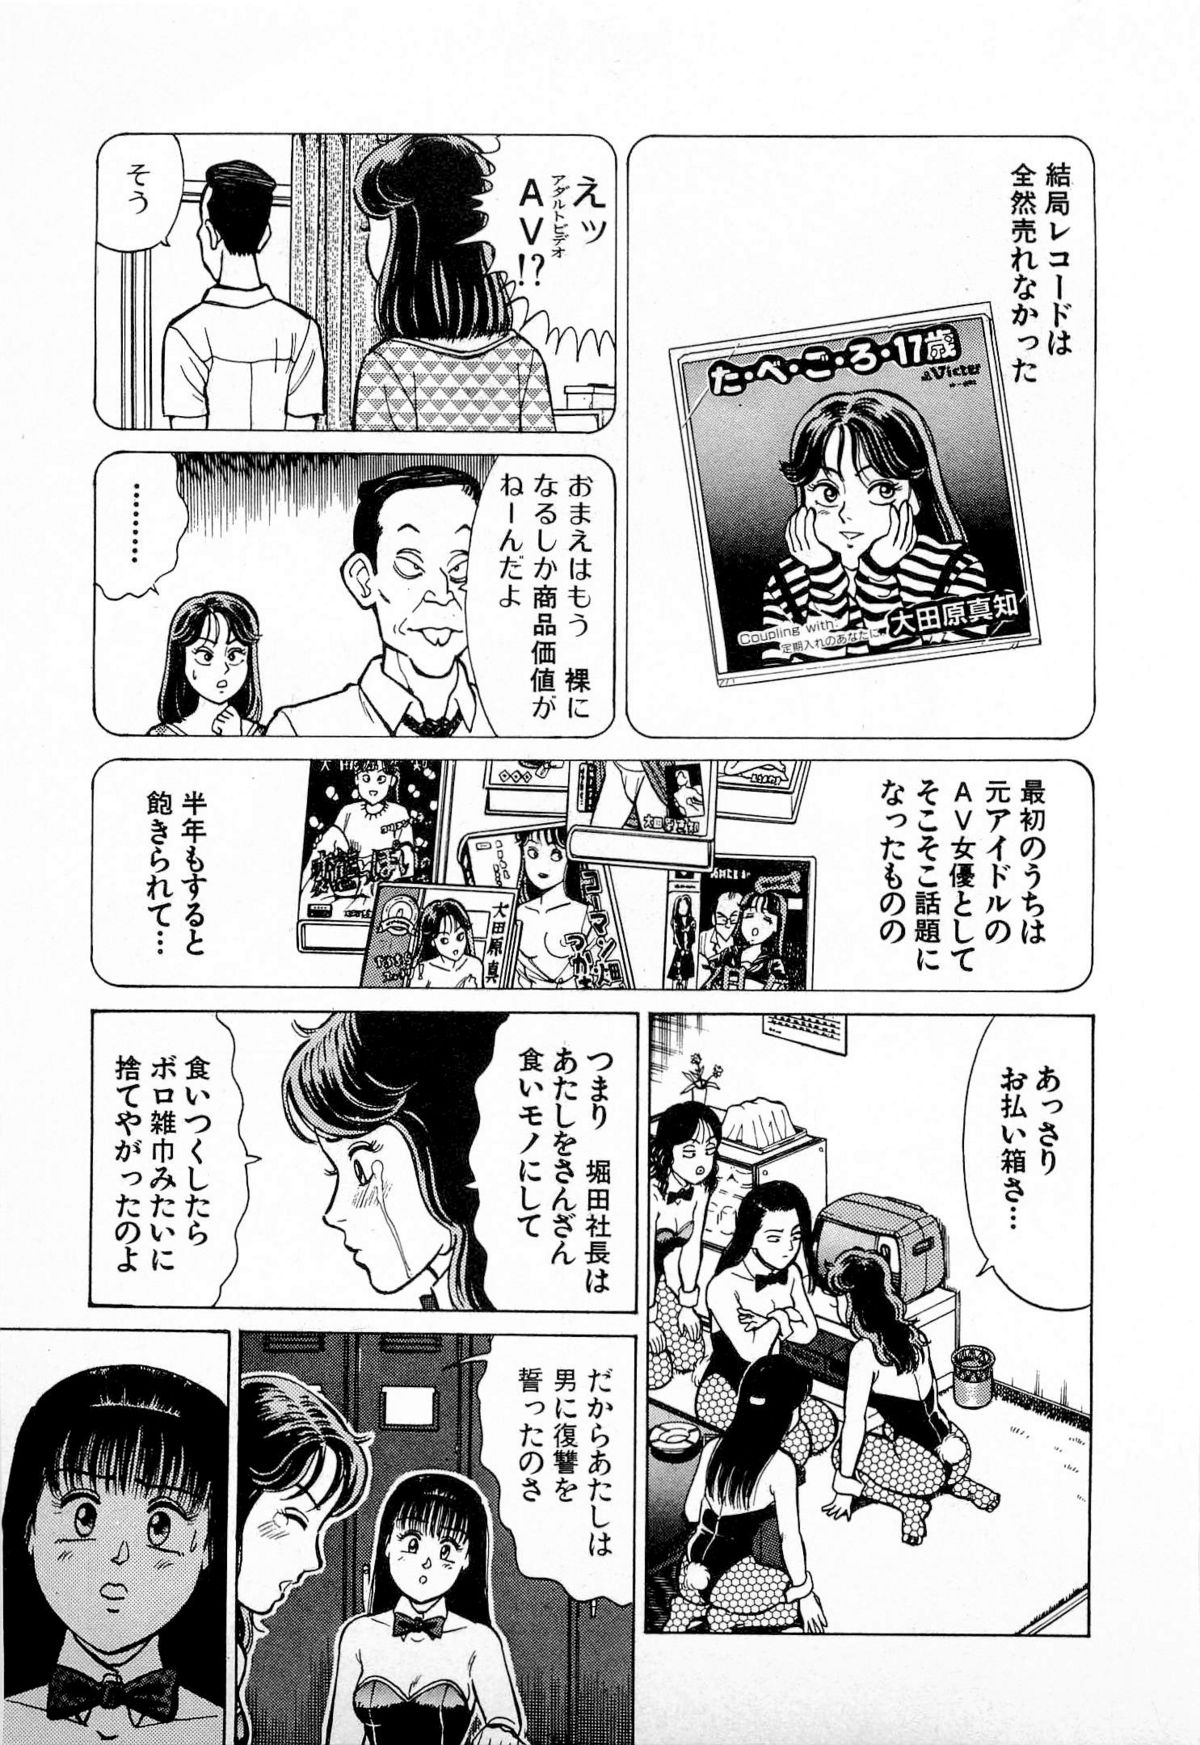 [久寿川なるお] SOAPのMOKOちゃん Vol.4